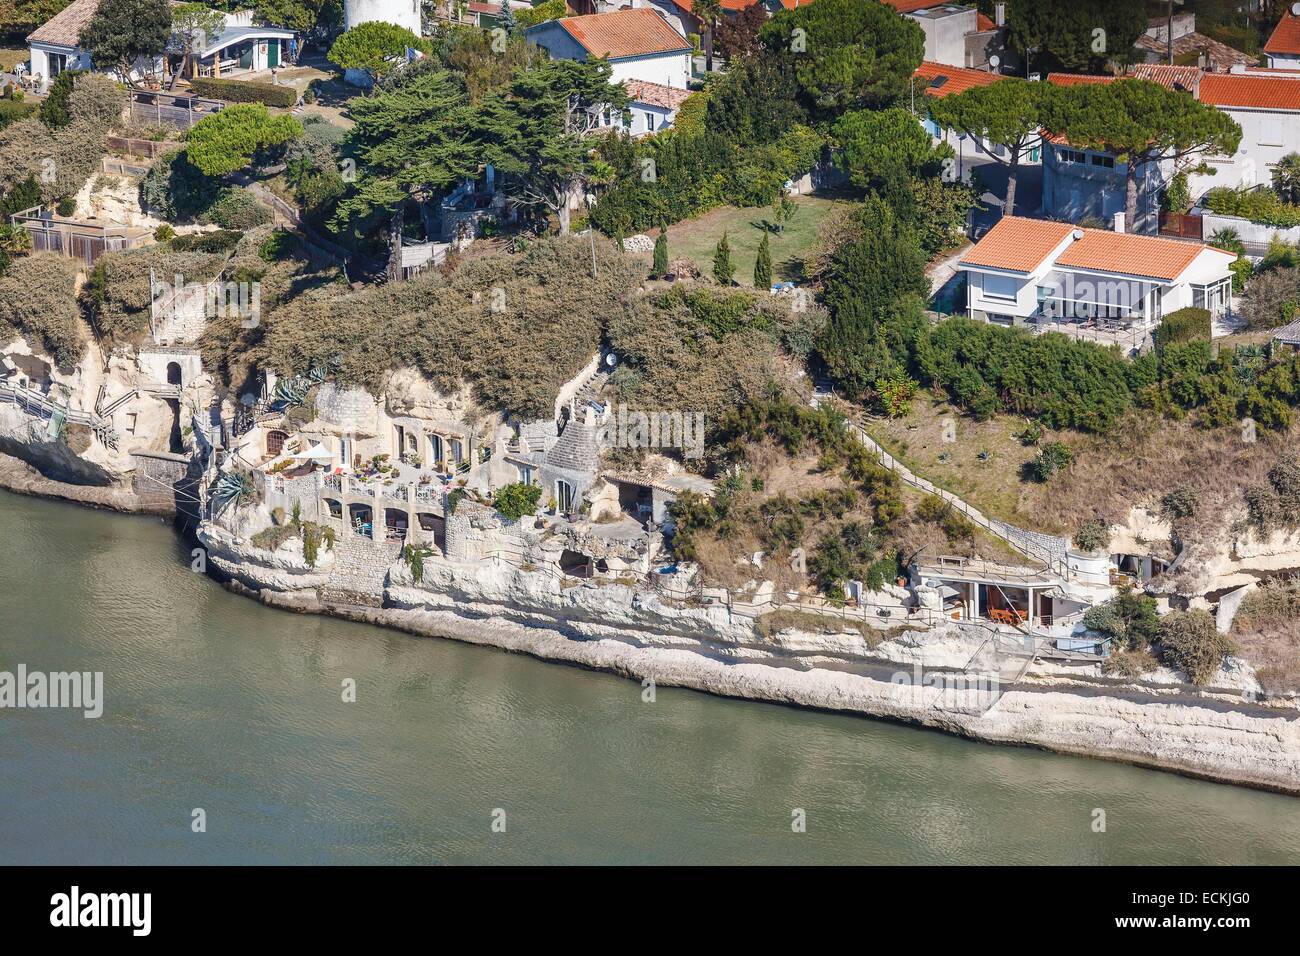 Francia, Charente Maritime, Meschers sur Gironde, grotte troglodite nella rupe (vista aerea) Foto Stock